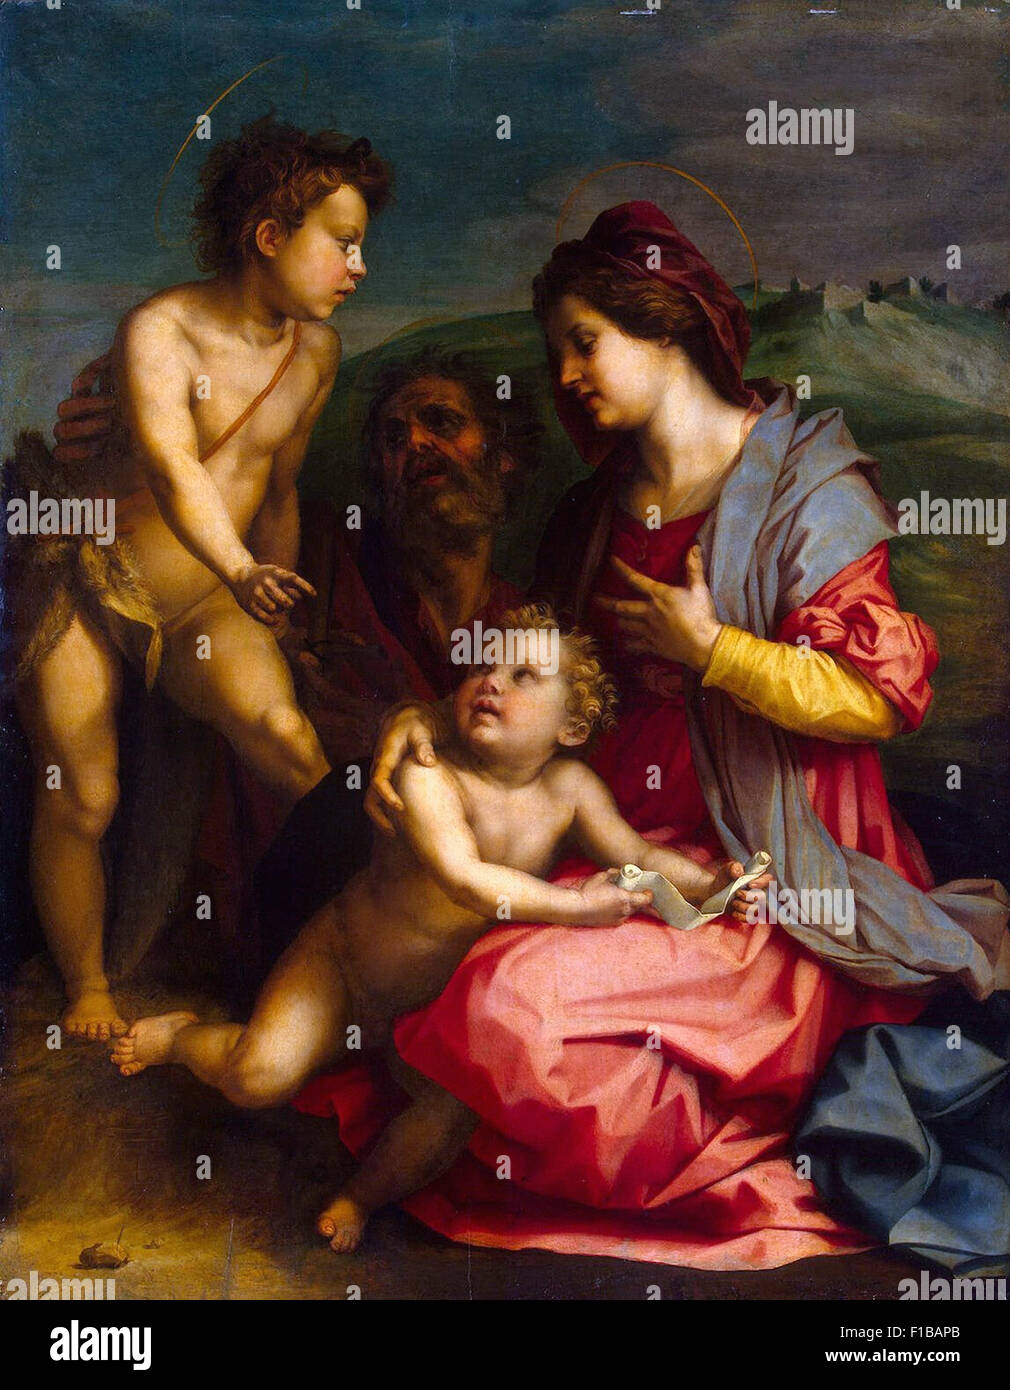 Andrea del Sarto - Holy Family with St John the Baptist Stock Photo